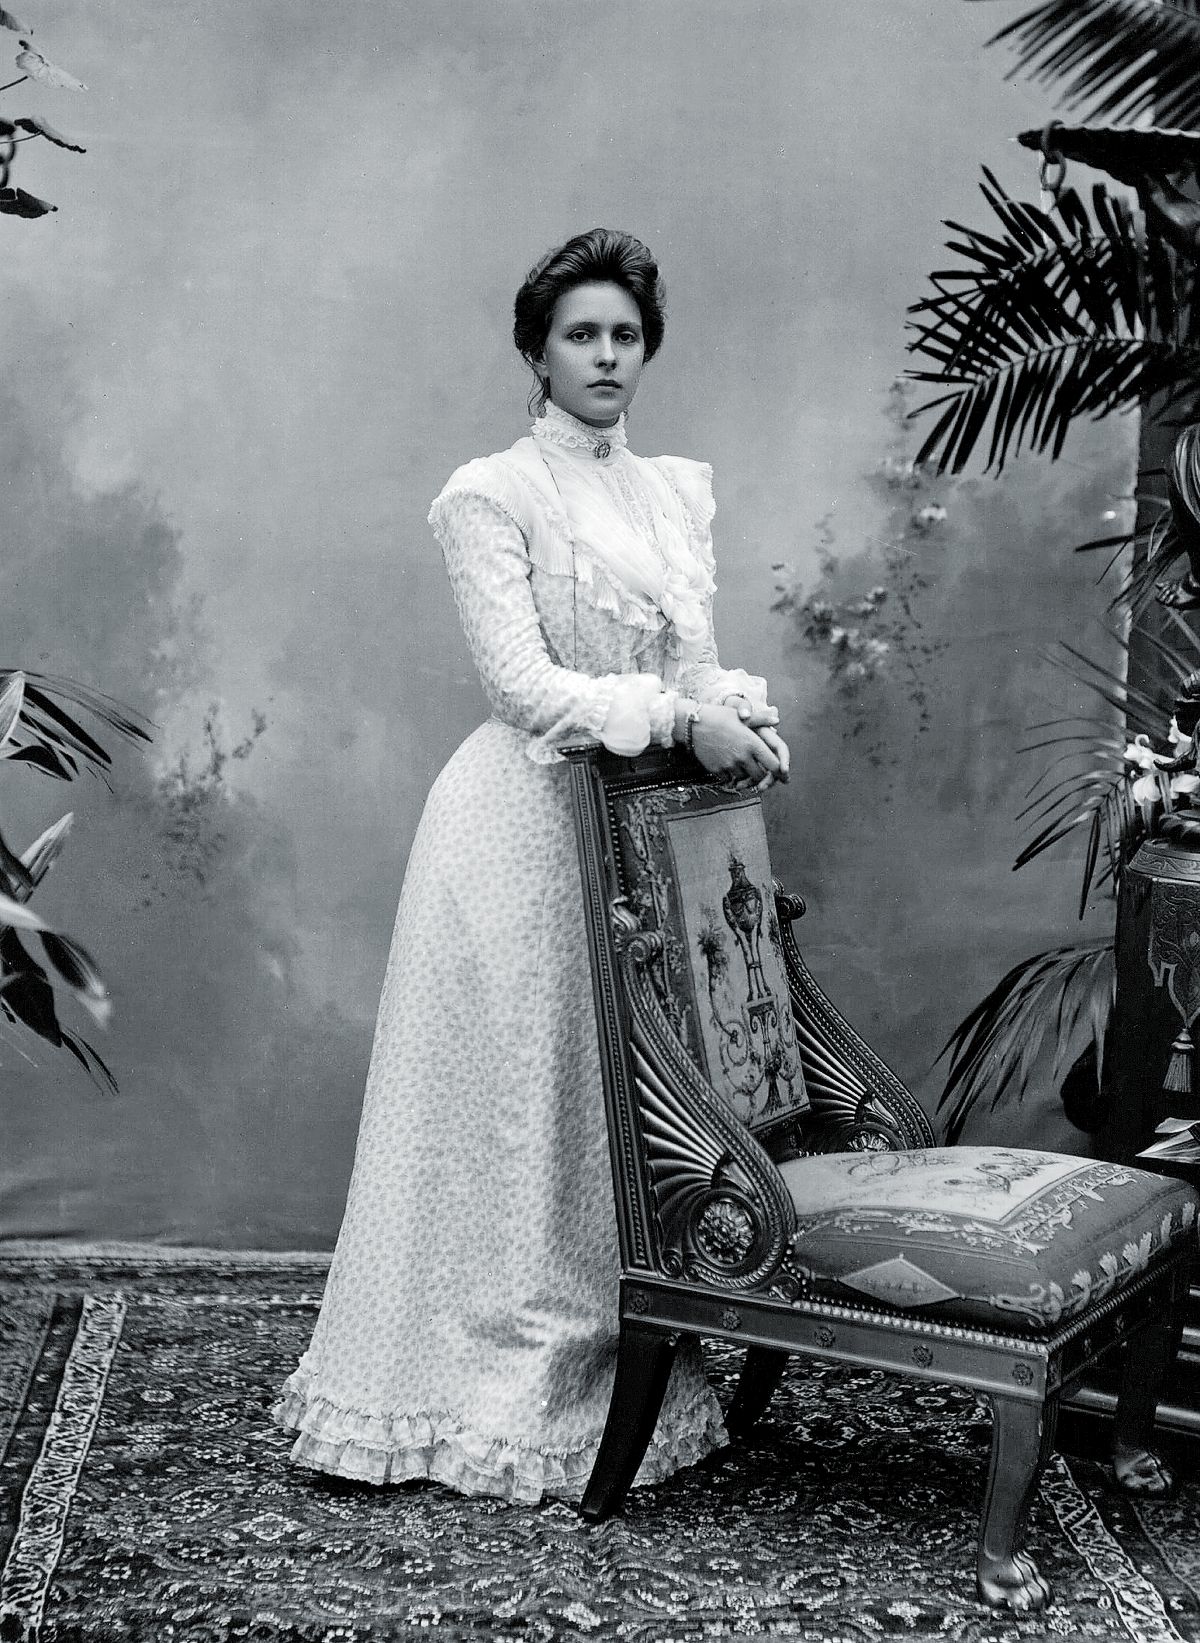 Принцесса Алиса Баттенбергская, правнучка королевы Виктории, мать принца Филиппа